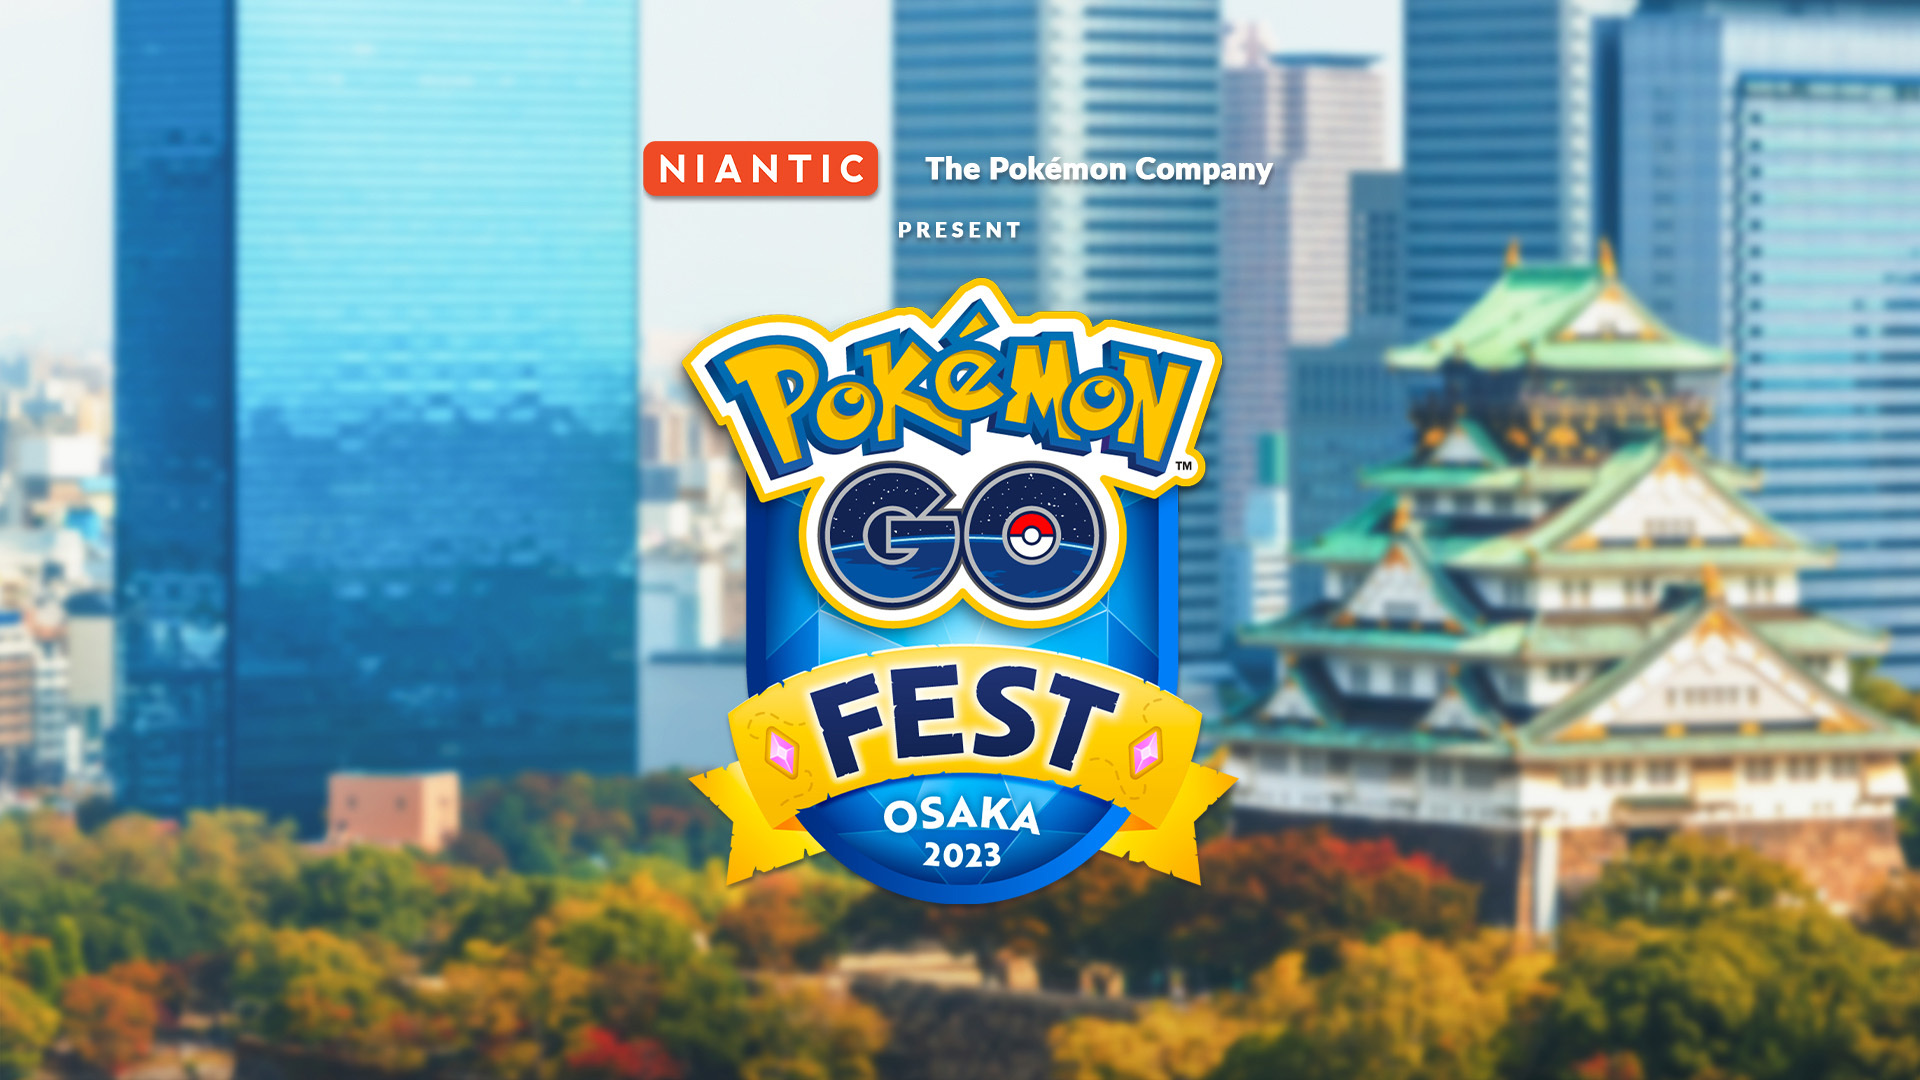 Jogabilidade do evento – Pokémon GO Fest 2023: cidade de Nova York